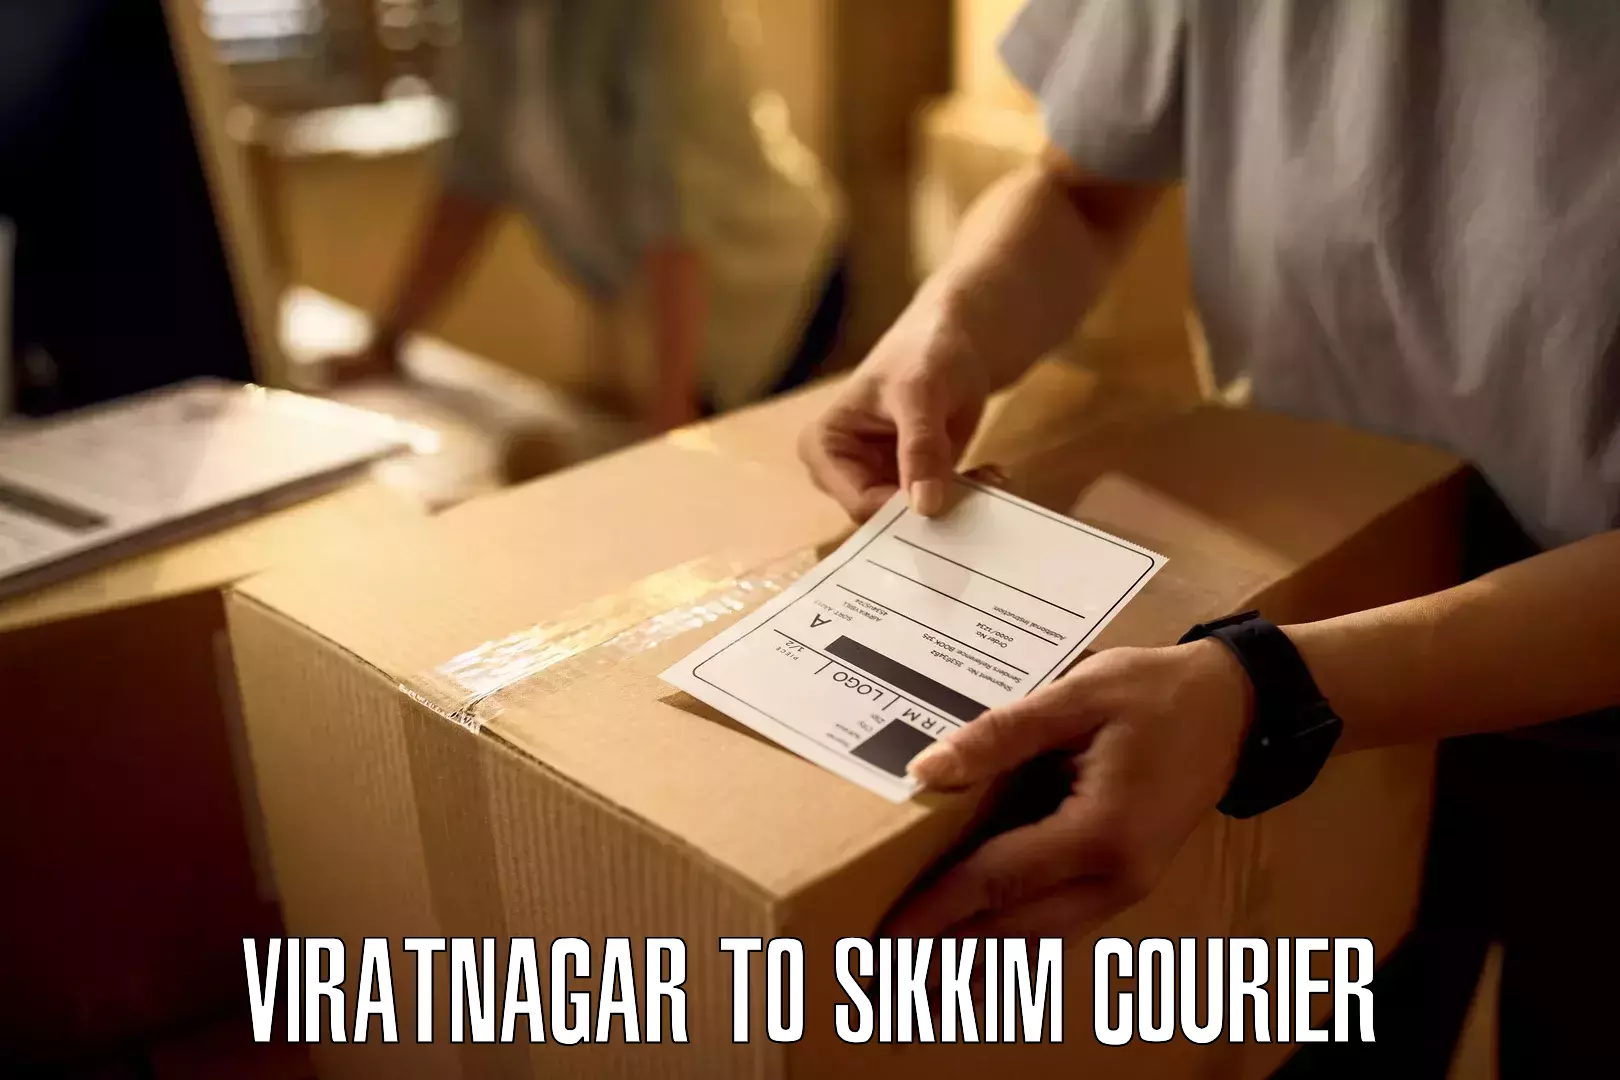 Multi-package shipping Viratnagar to Pelling